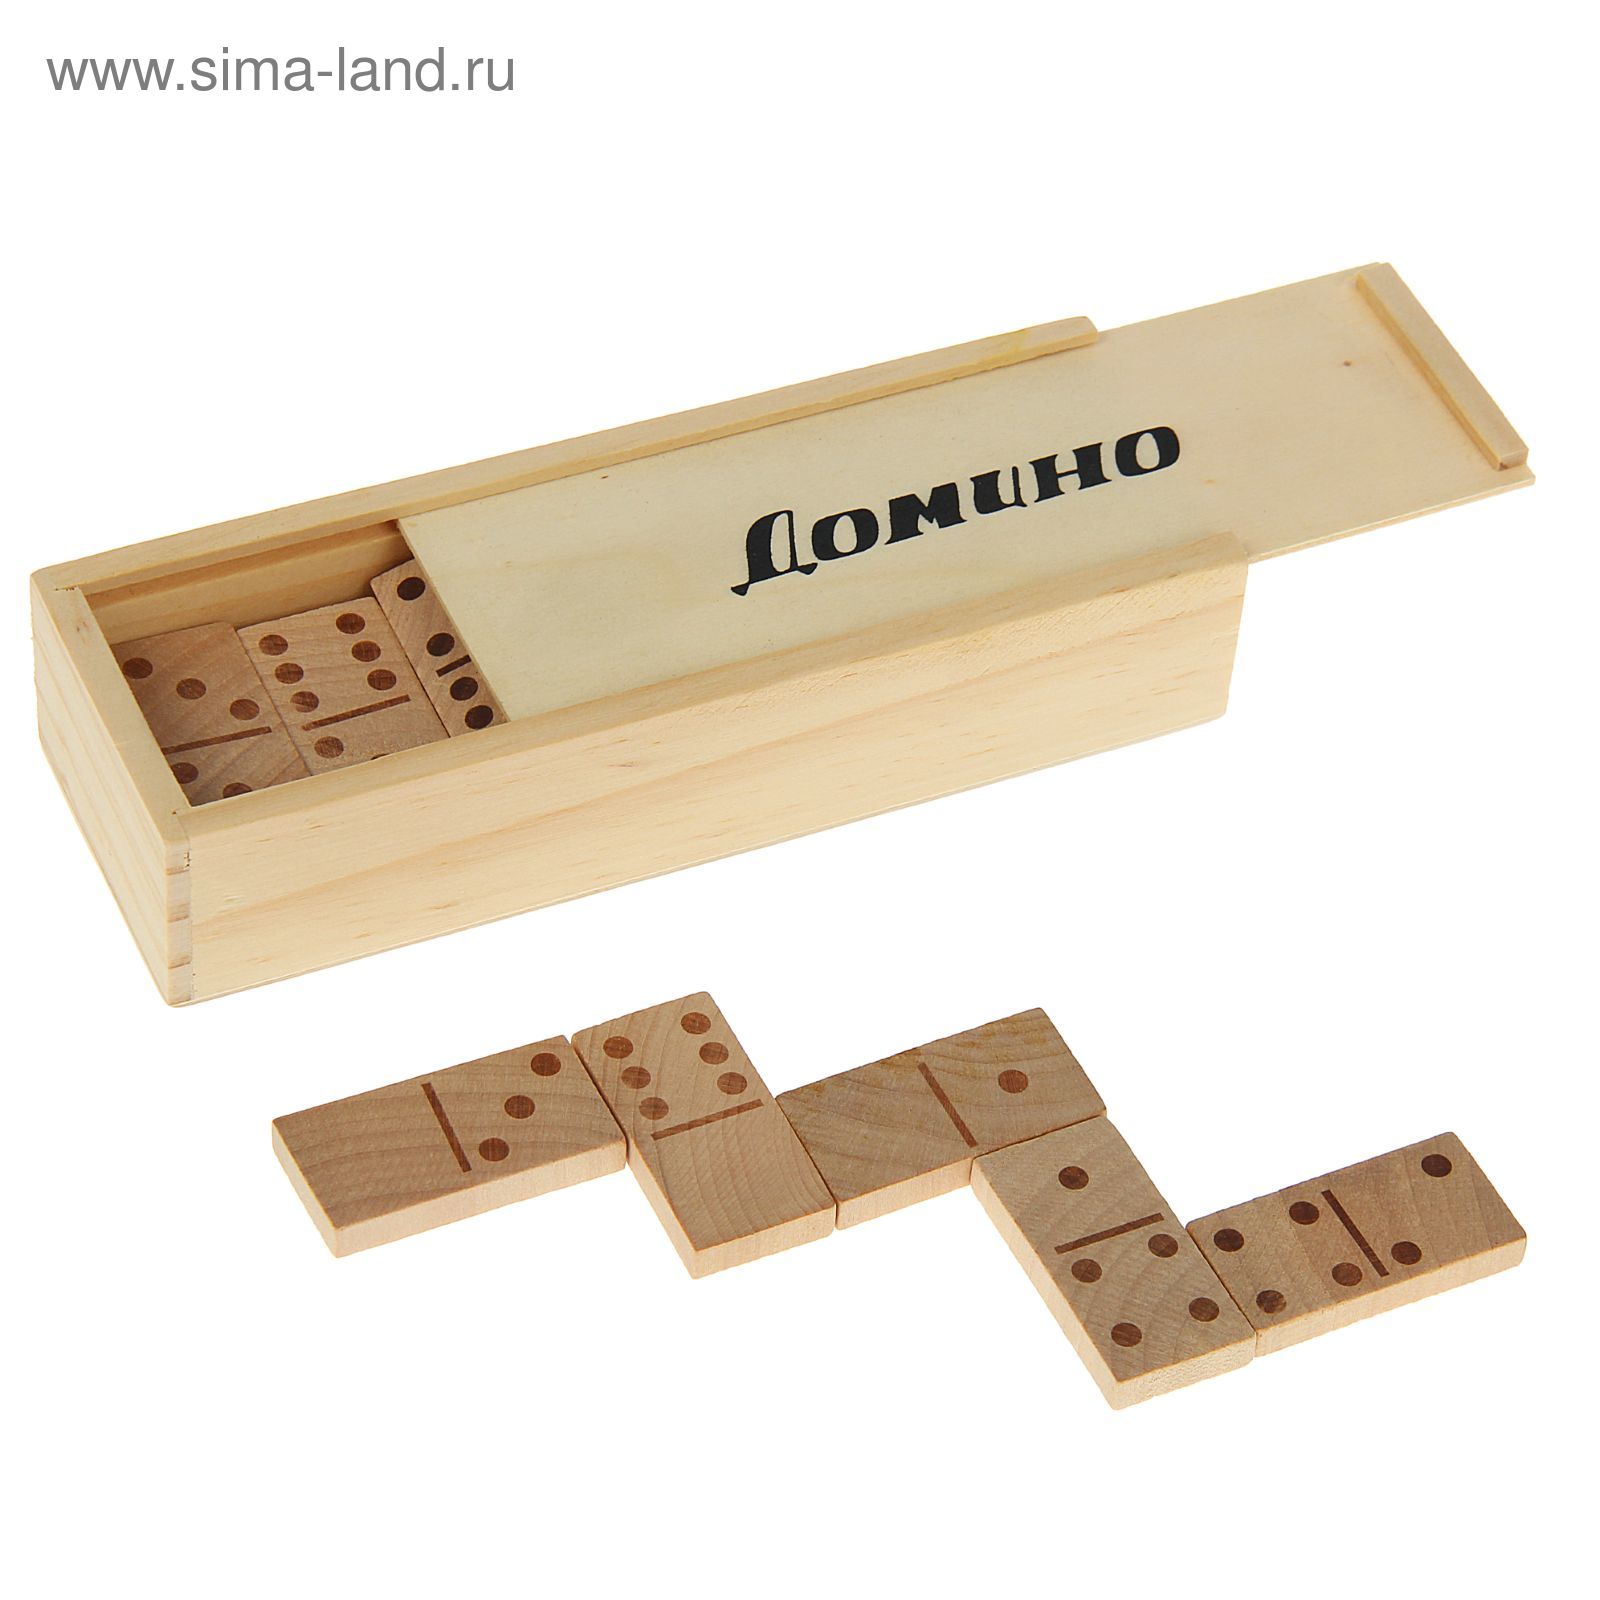 Игра настольная "Домино", 28 деревянных костей